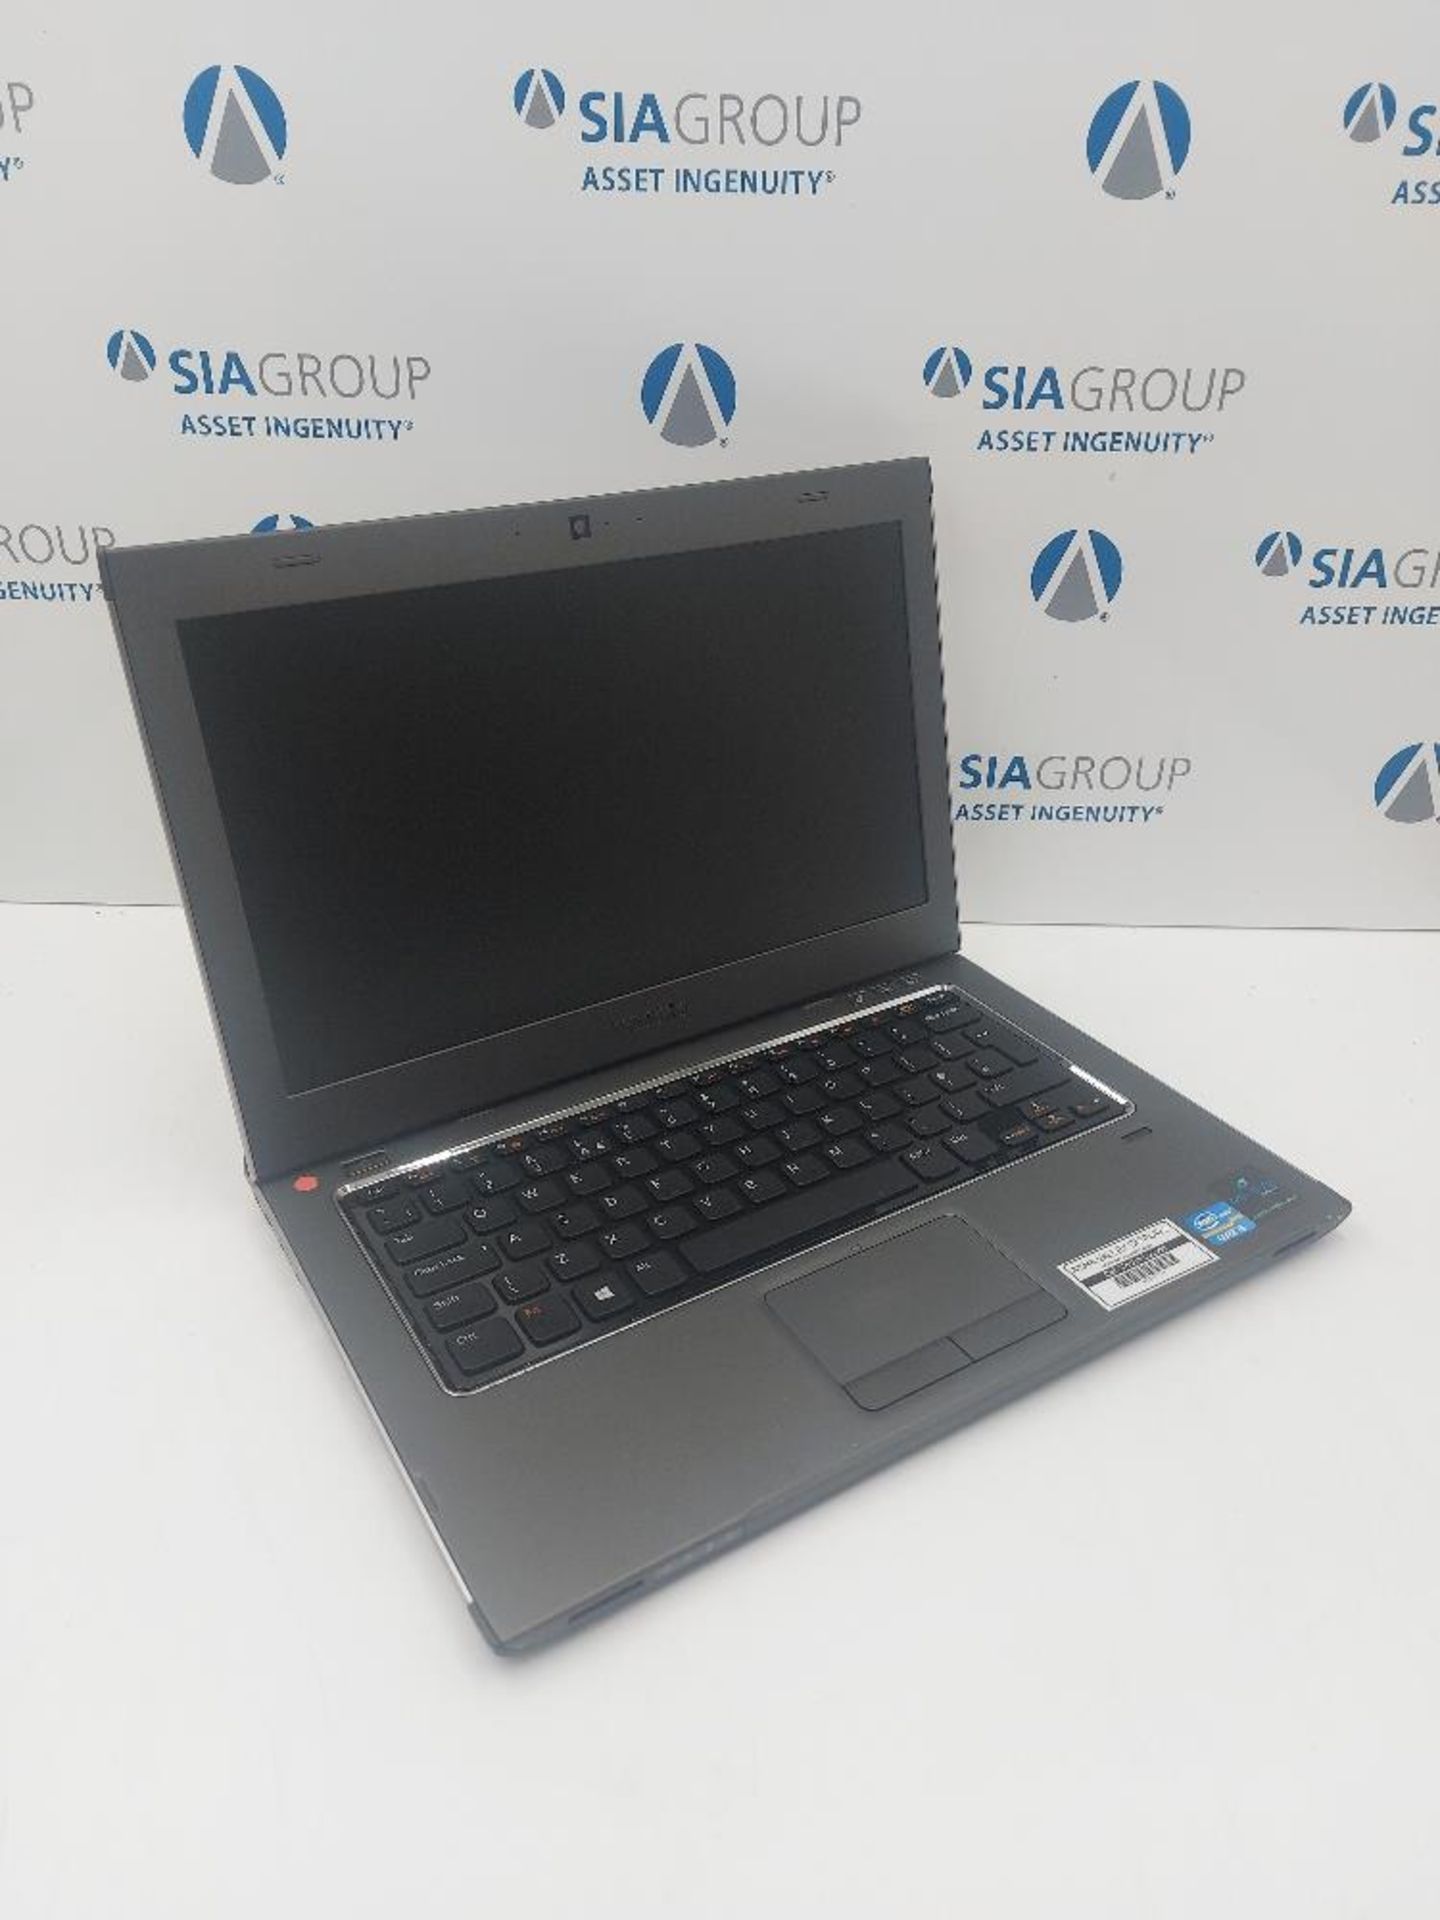 Dell Vostro 3360 P32G Laptop with Peli Case